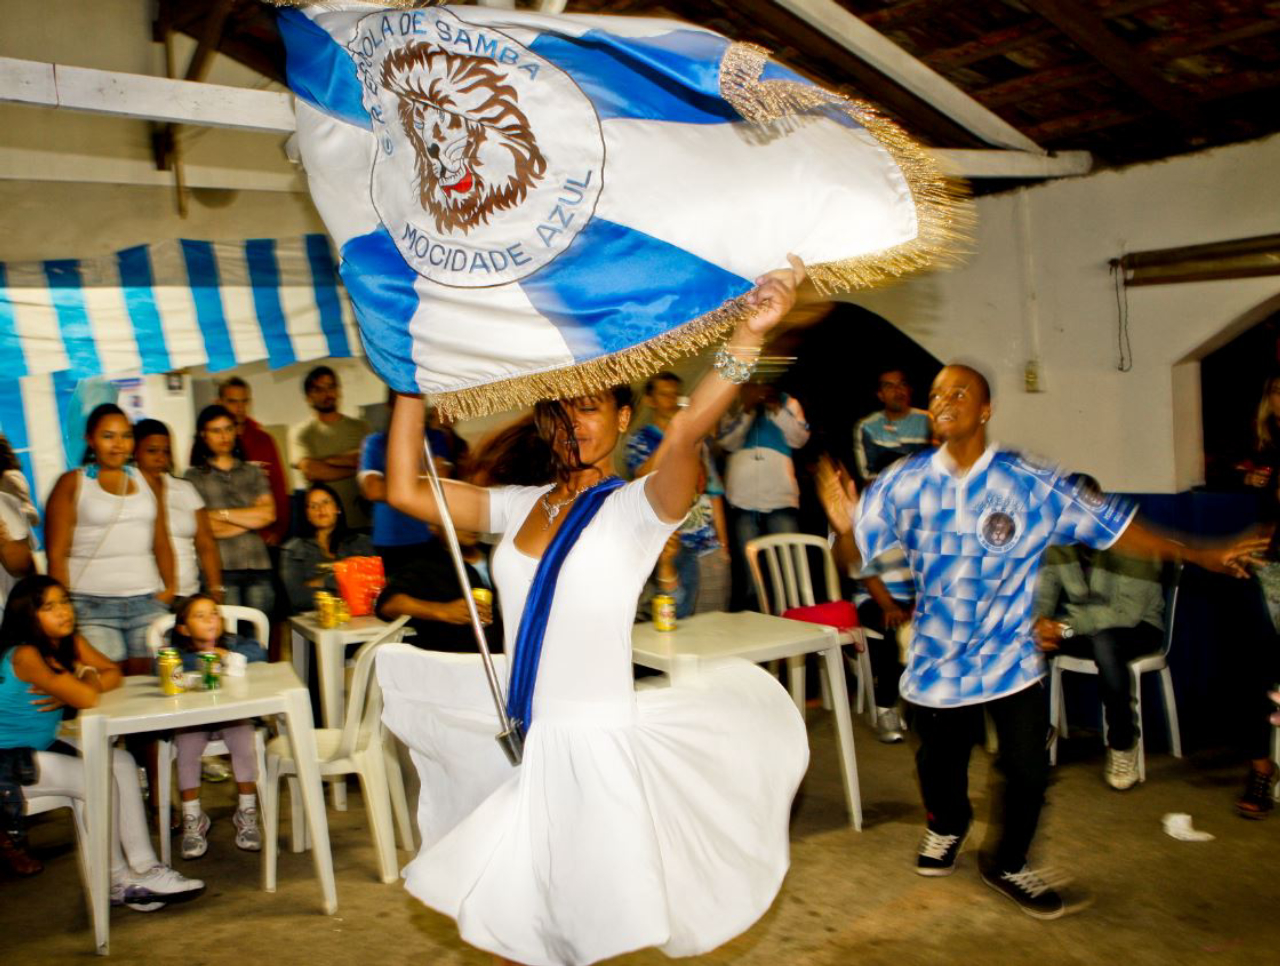 Mestre-sala e porta-bandeira da Mocidade Azul em ensaio da escola em 2012. Foto: Antonio Costa/Arquivo Gazeta do Povo